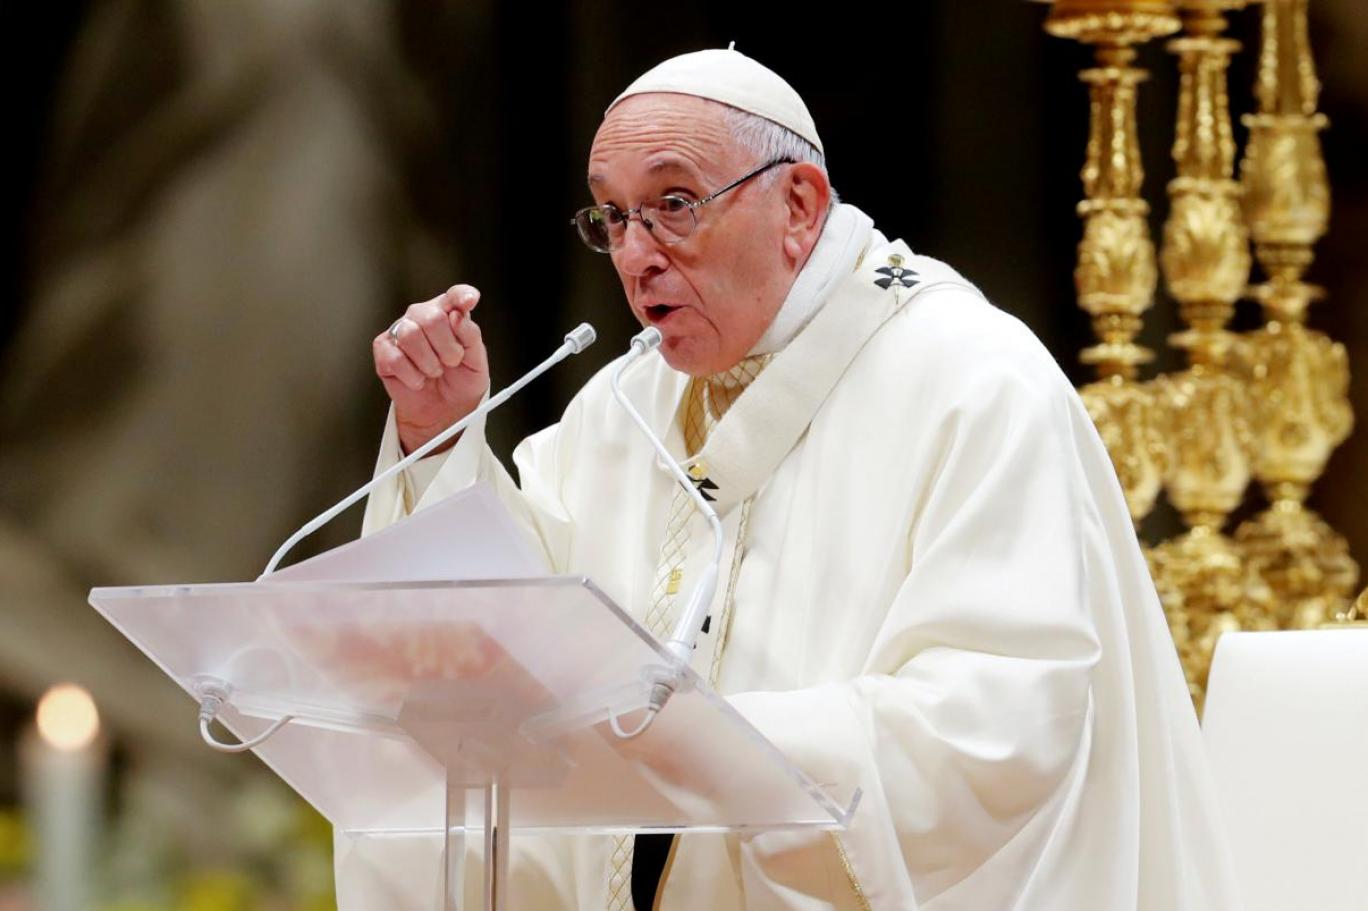   بابا الفاتيكان يرفع السرية عن الاعتداءات الجنسية في الكنيسة